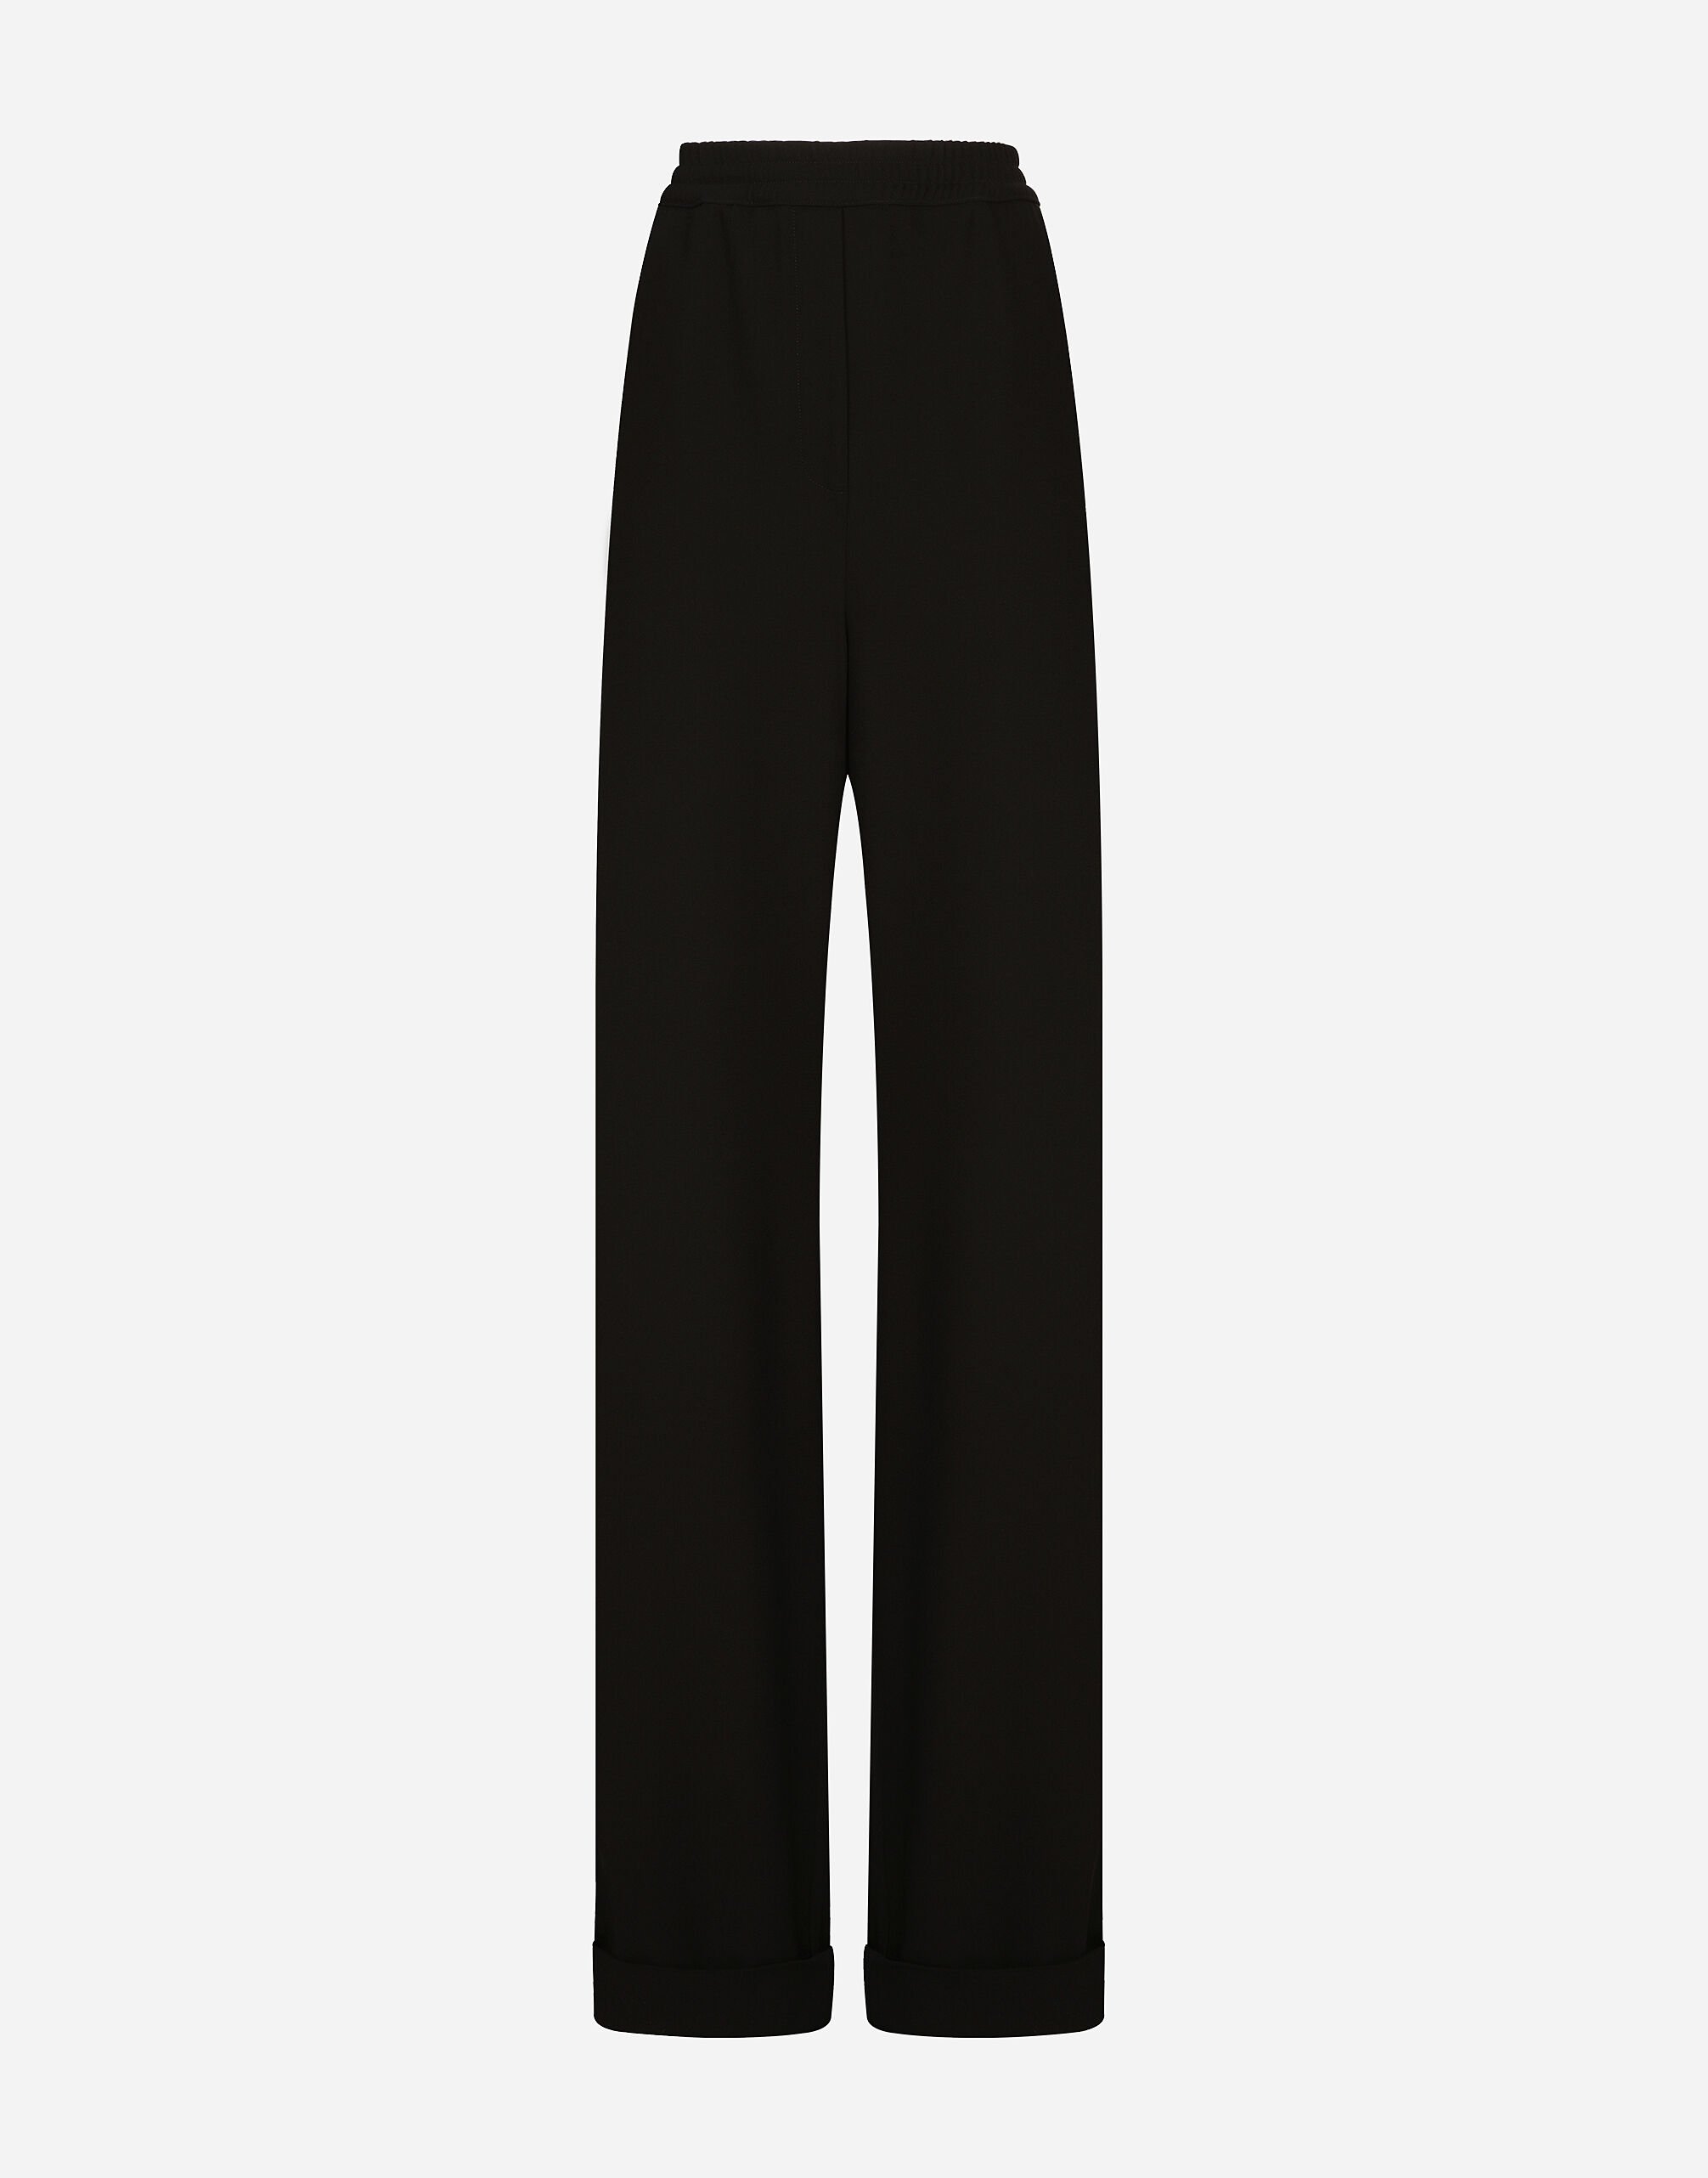 Dolce & Gabbana KIM DOLCE&GABBANA Woolen pajama pants with piping Black F26X6FGDBMX